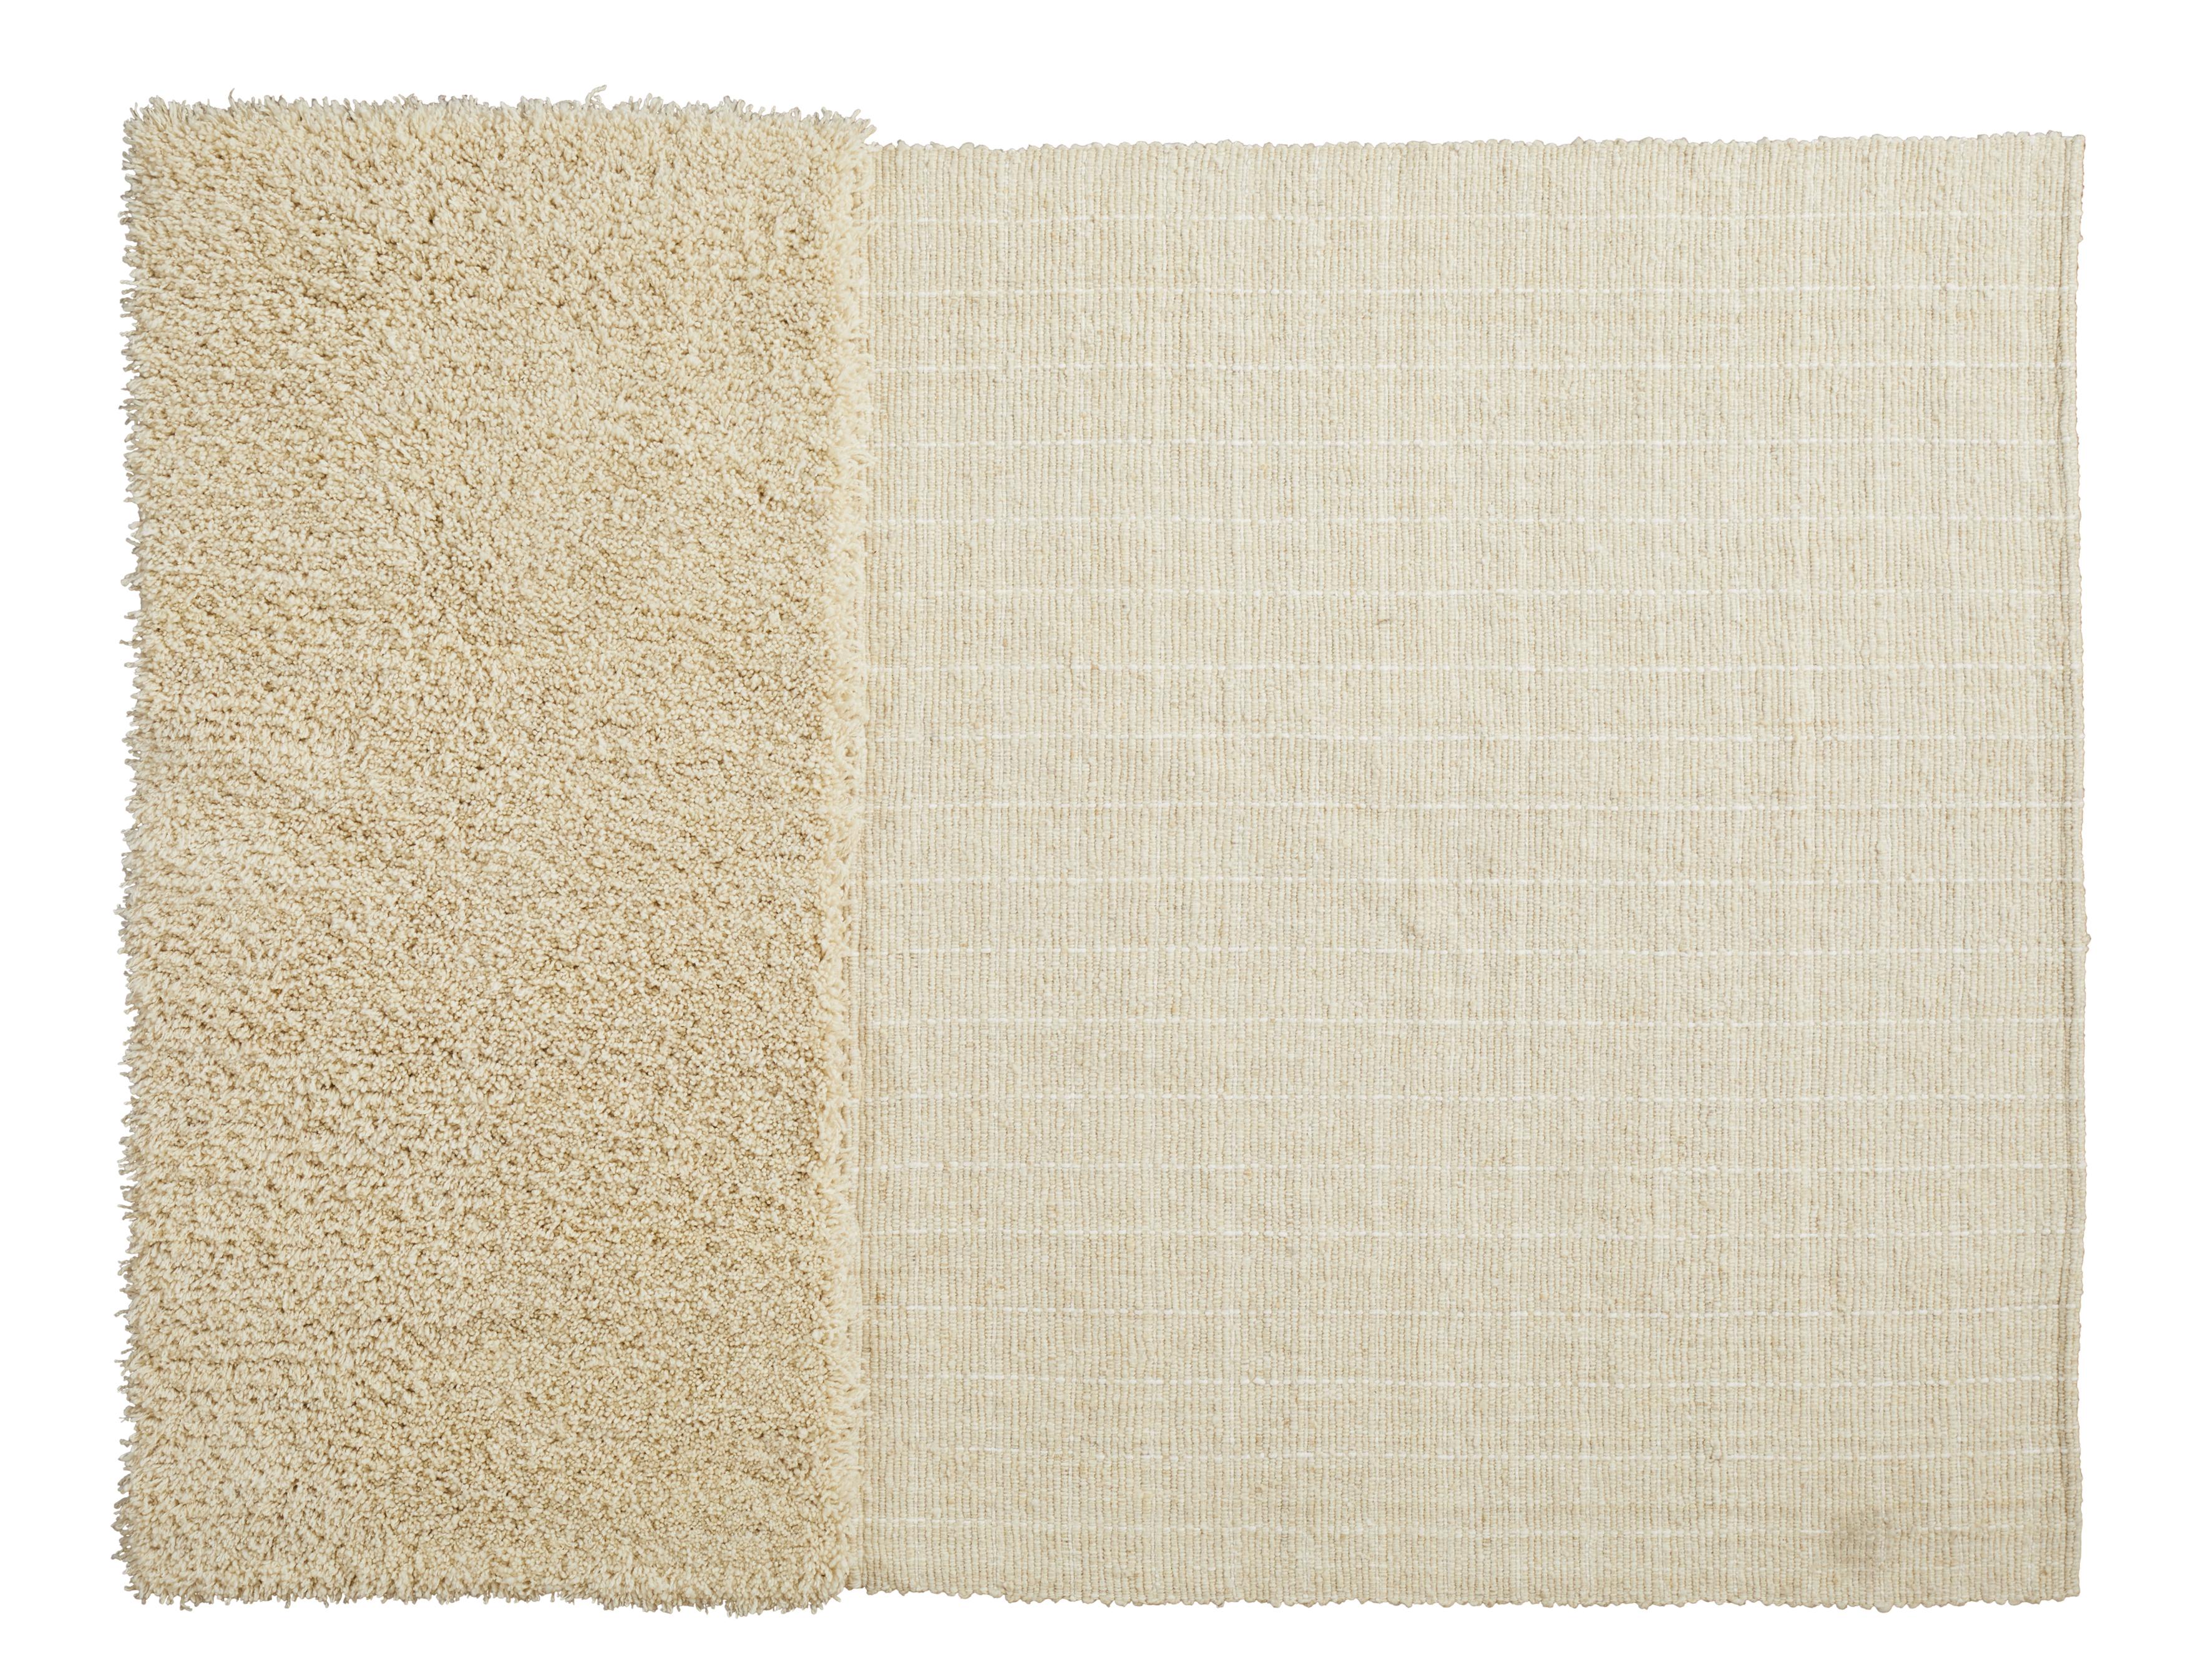 Kleiner Moton Subas Teppich von Sebastian Herkner
MATERIALIEN: 100% natürliche Schurwolle. 
Technik: Natürlich gefärbte Fasern. Handgewebt in Kolumbien.
Abmessungen: B 160 x L 220 cm 
Erhältlich in den Farben: Karo, linea 1, linea 2, moton,